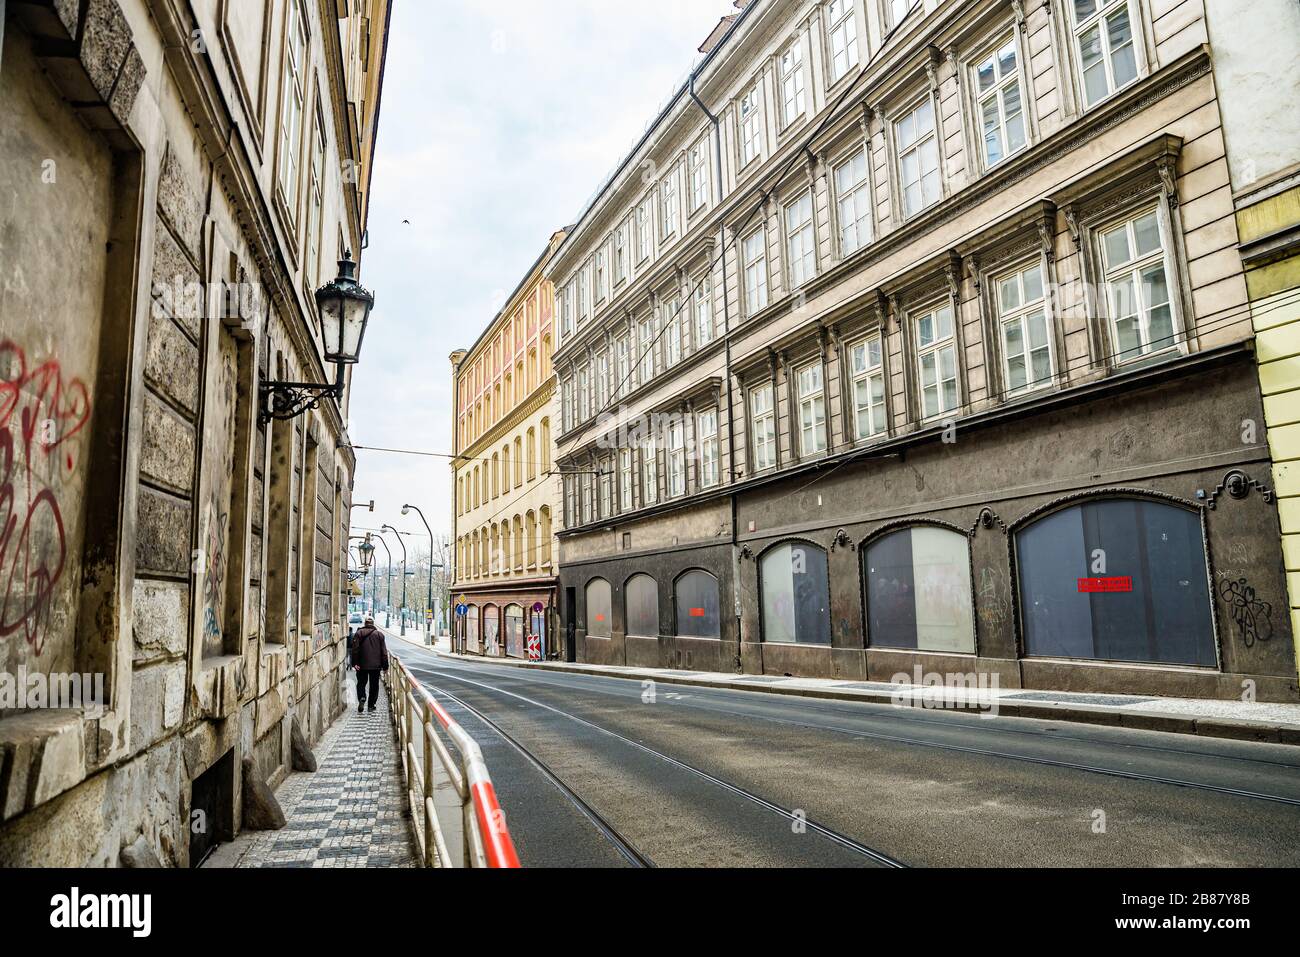 Prag, Tschechische republik - 19. März 2020. Smetanovo nabrezi - Smetana Riverbank während der Coronavirus-Krise und Reiseverbot ohne Touristen Stockfoto